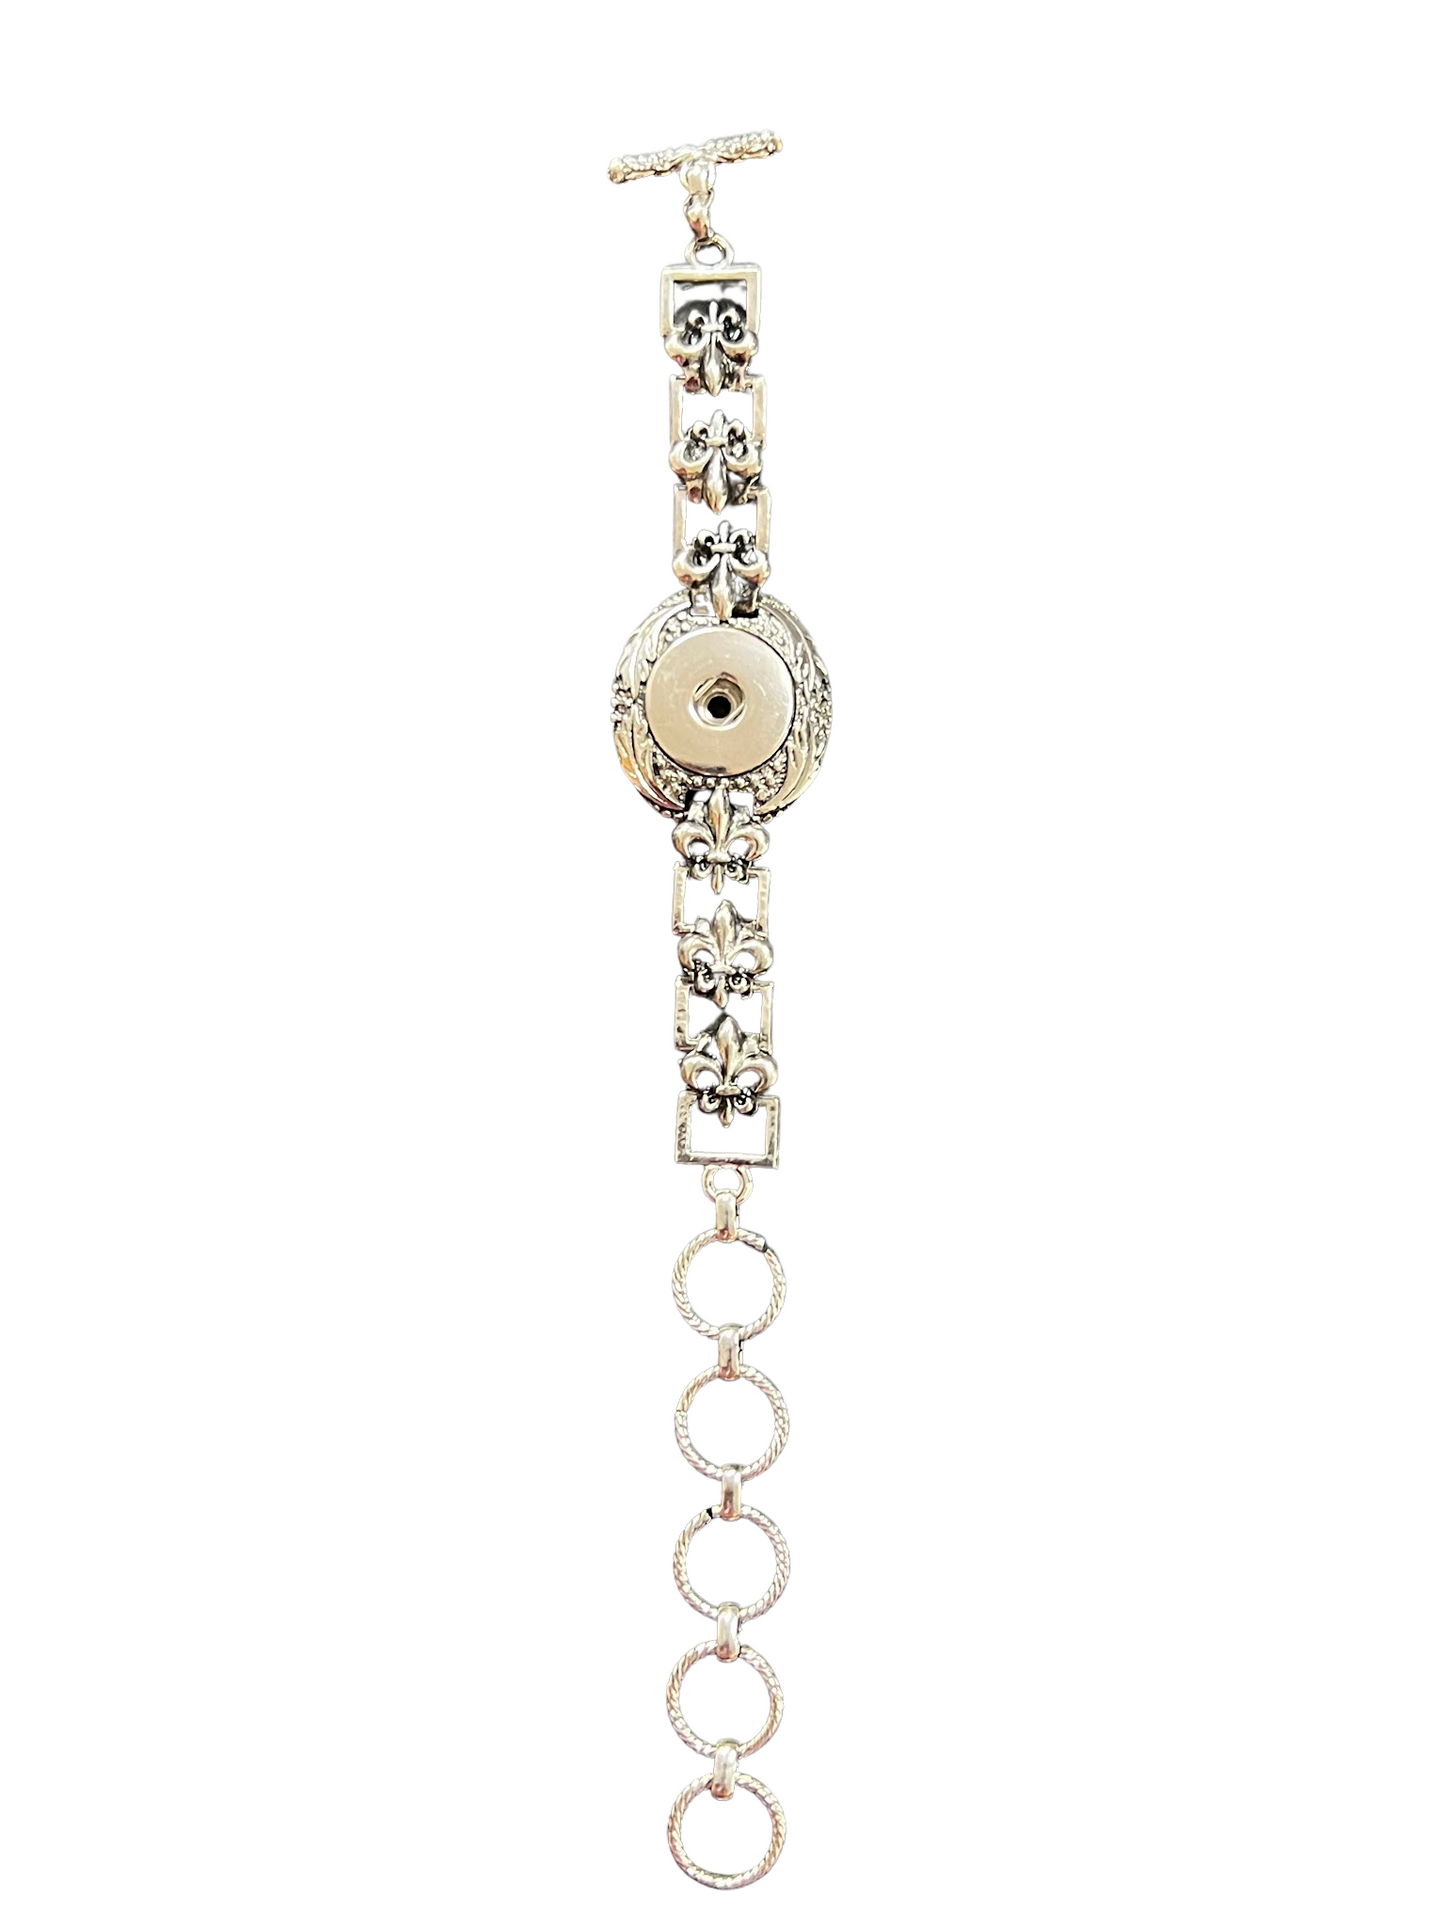 Single Snap Bracelet Fleur-De-Lis Style Adjustable 6"-9"  20mm